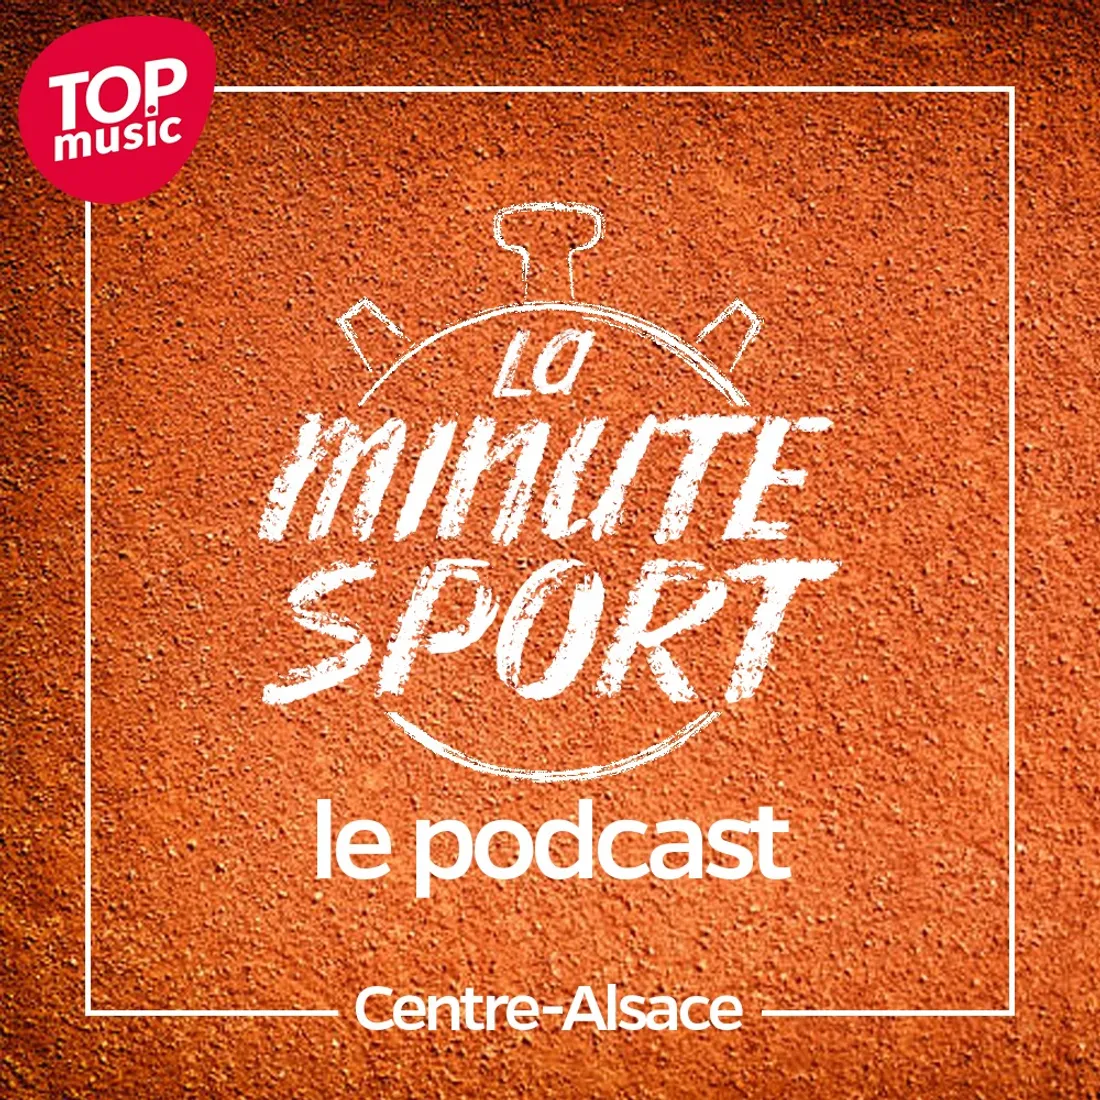 La Minute sport - Centre-Alsace - vendredi 20 janvier